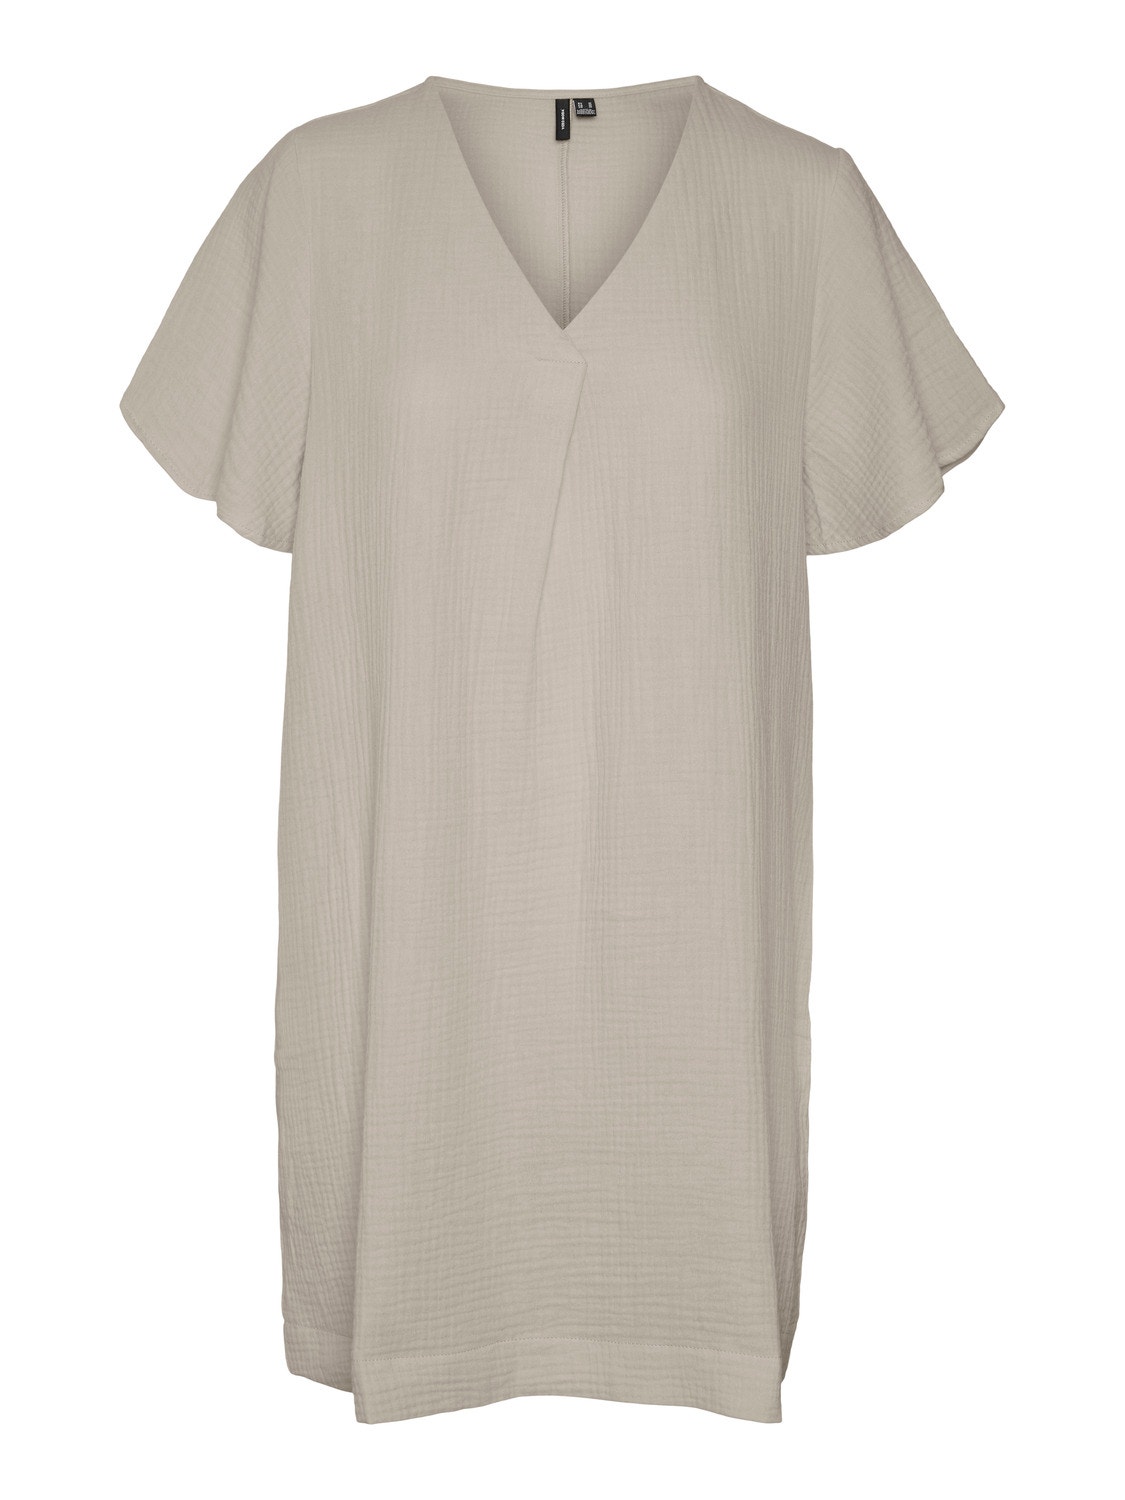 Vero Moda VMNATALI Kort kjole -Silver Lining - 10283125